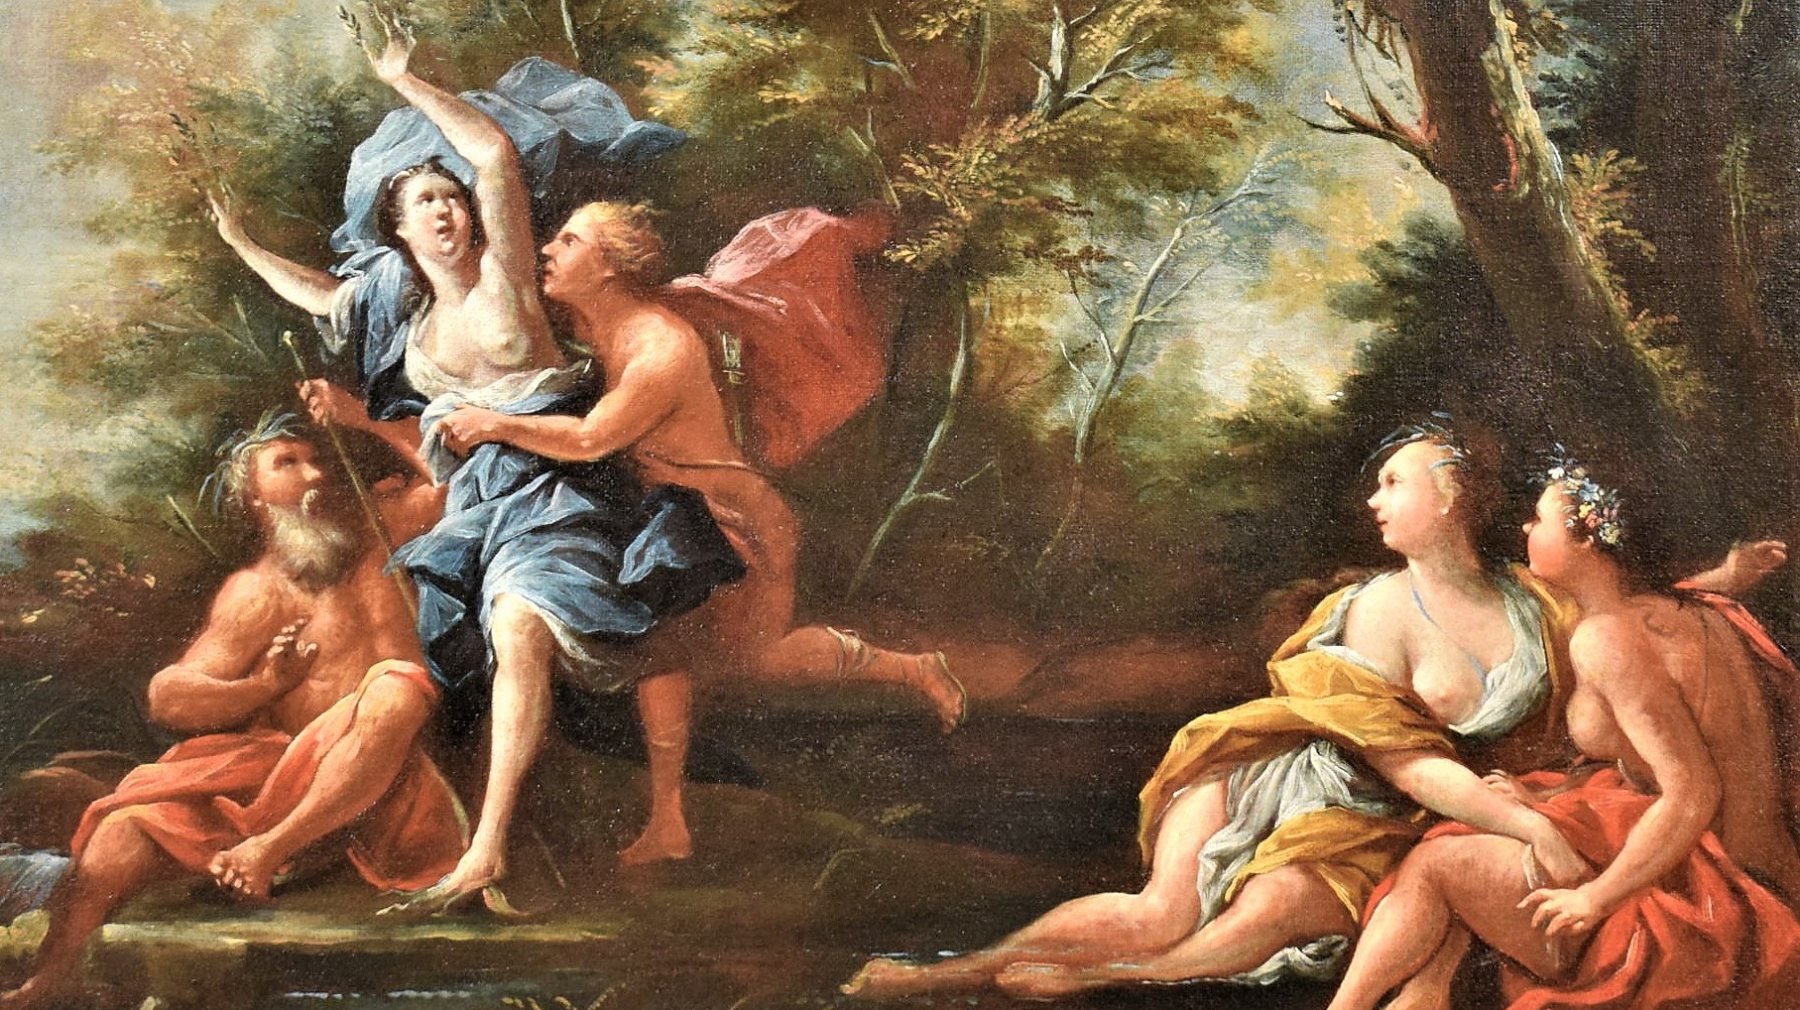 Sob o olhar do pai da ninfa, Apolo consegue alcançar Daphne (duas das figuras mitológicas que fazem parte do poema de Ovídio), que começa a transformar-se numa árvore